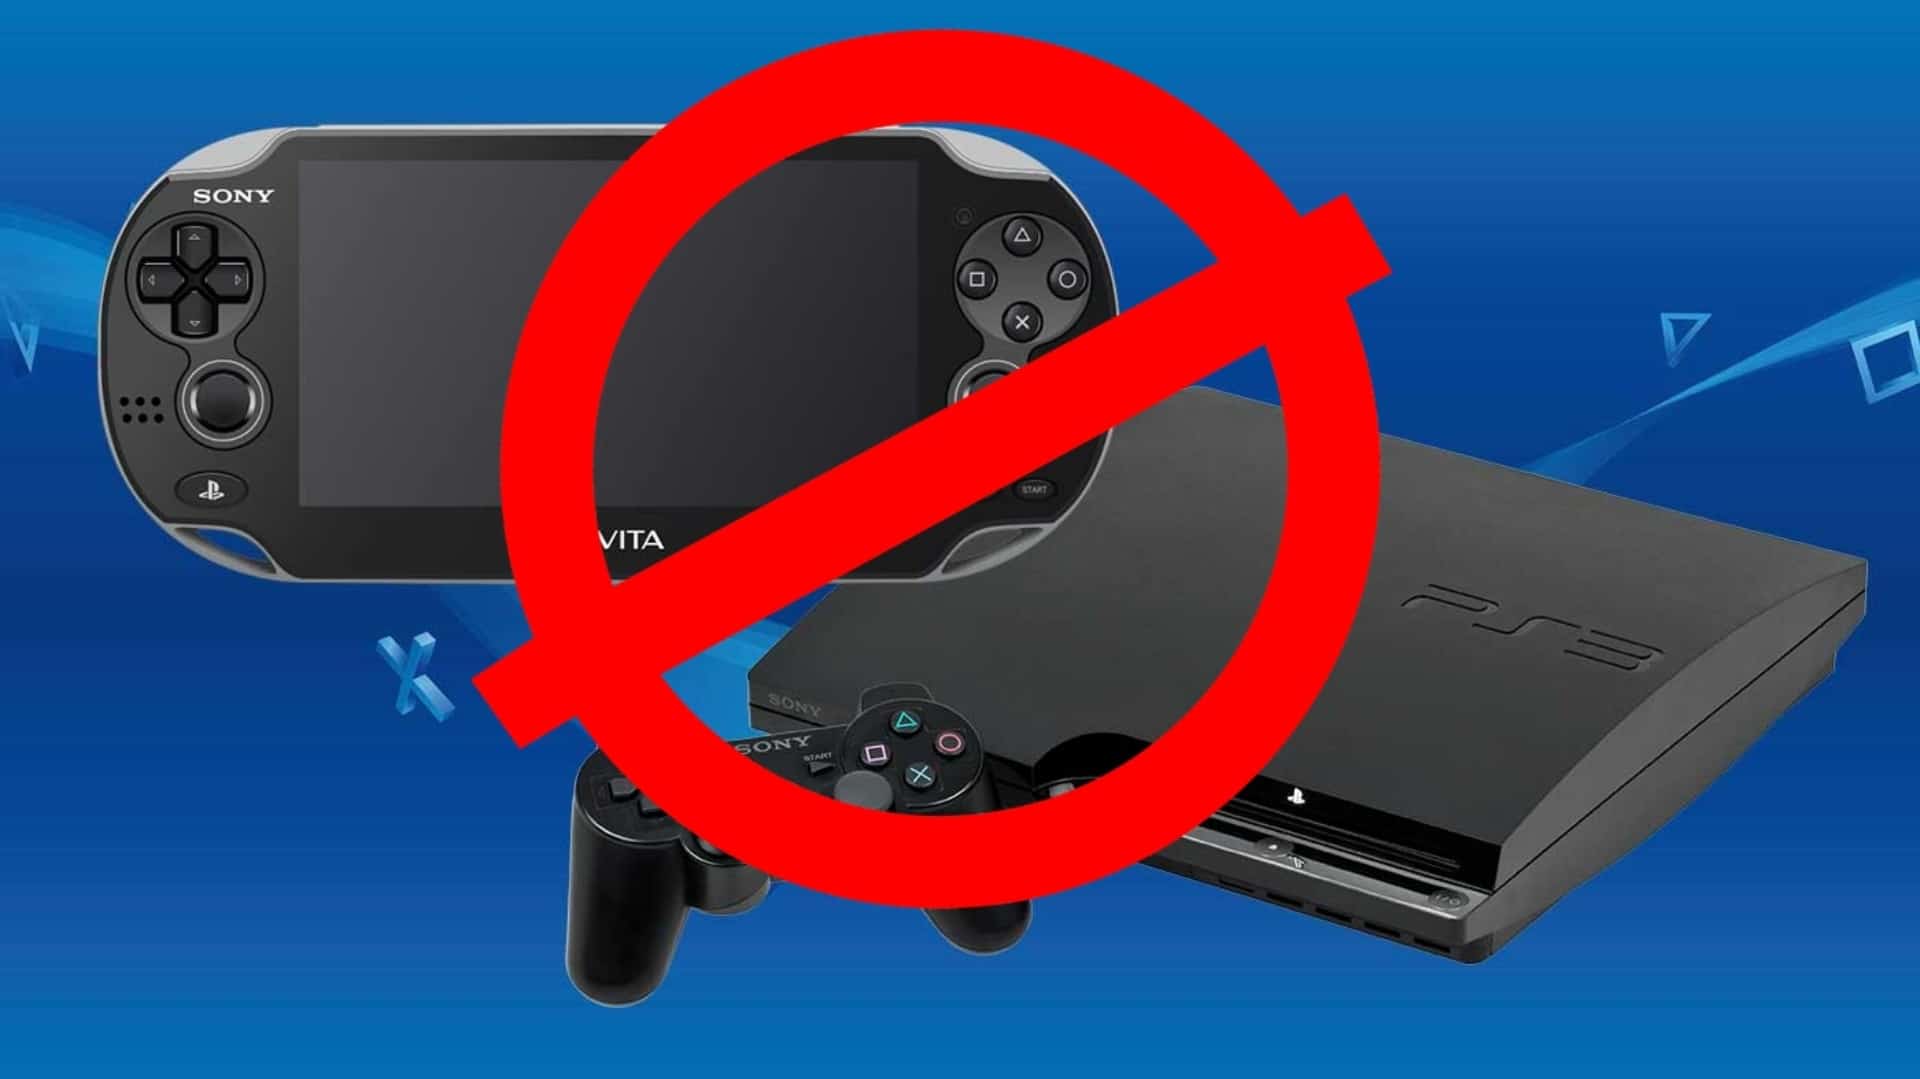 Vita-PS3-are-dead-GamersRD (1)